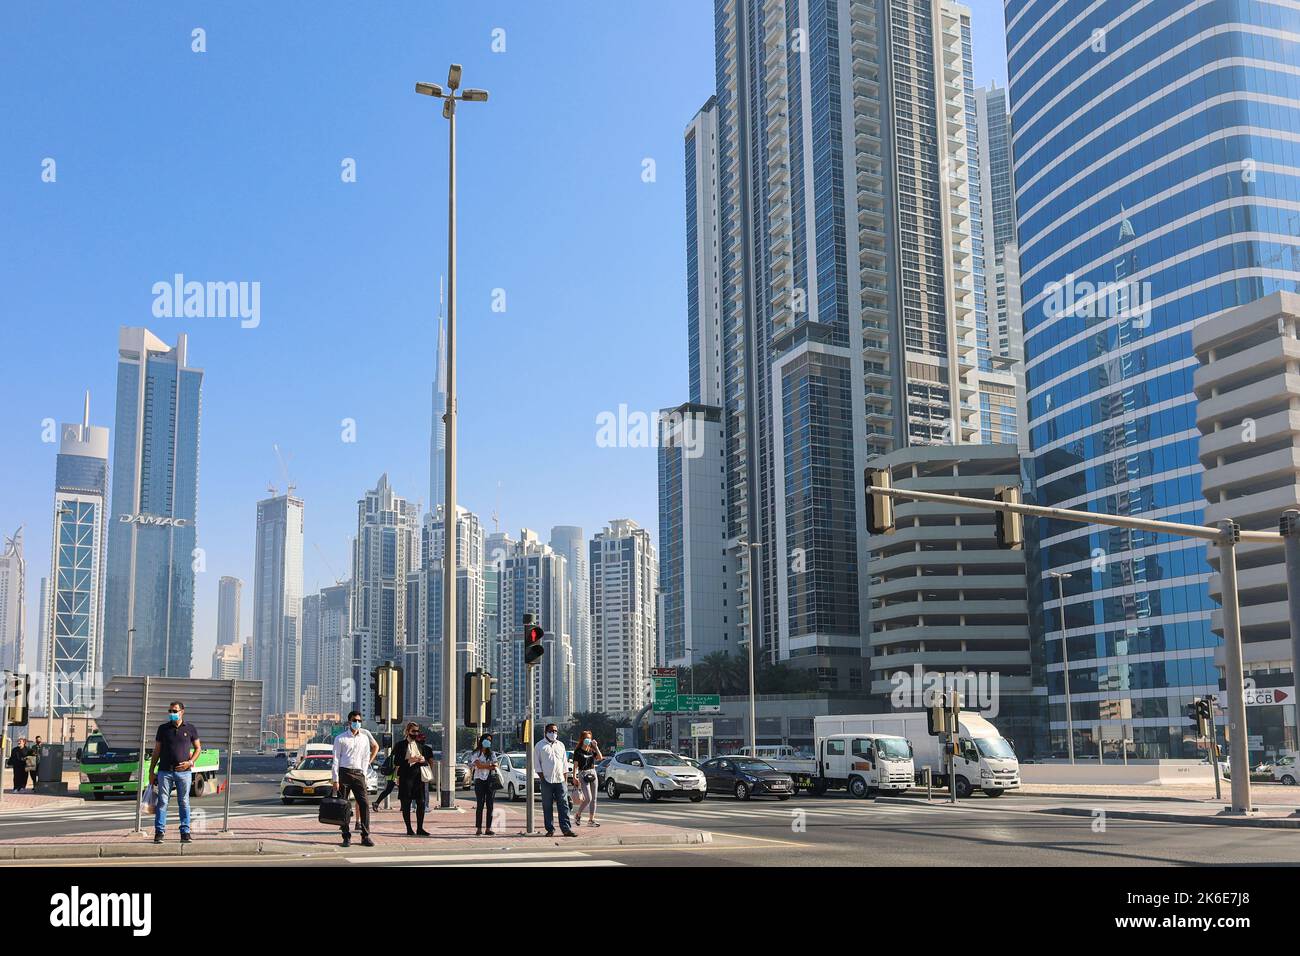 Eau, Dubaï - 27 novembre 2021 : les gens marchent le long de la traversée piétonne dans le centre d'affaires de Dubaï. Les hommes en costume et les masques médicaux se précipitent pour travailler sur fond d'énormes gratte-ciel. Photo de haute qualité Banque D'Images